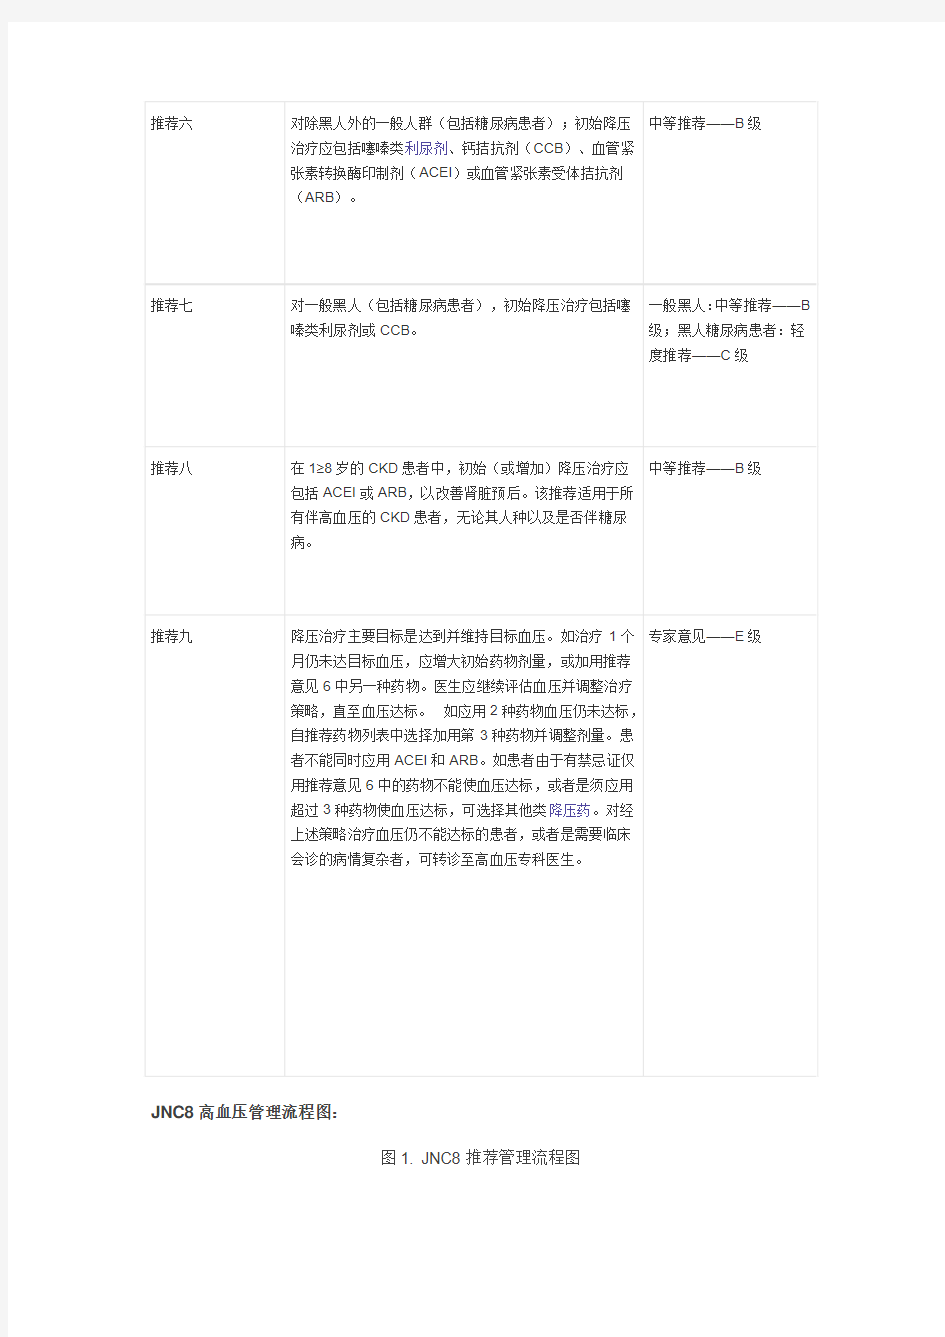 美国高血压指南JNC8_中文版